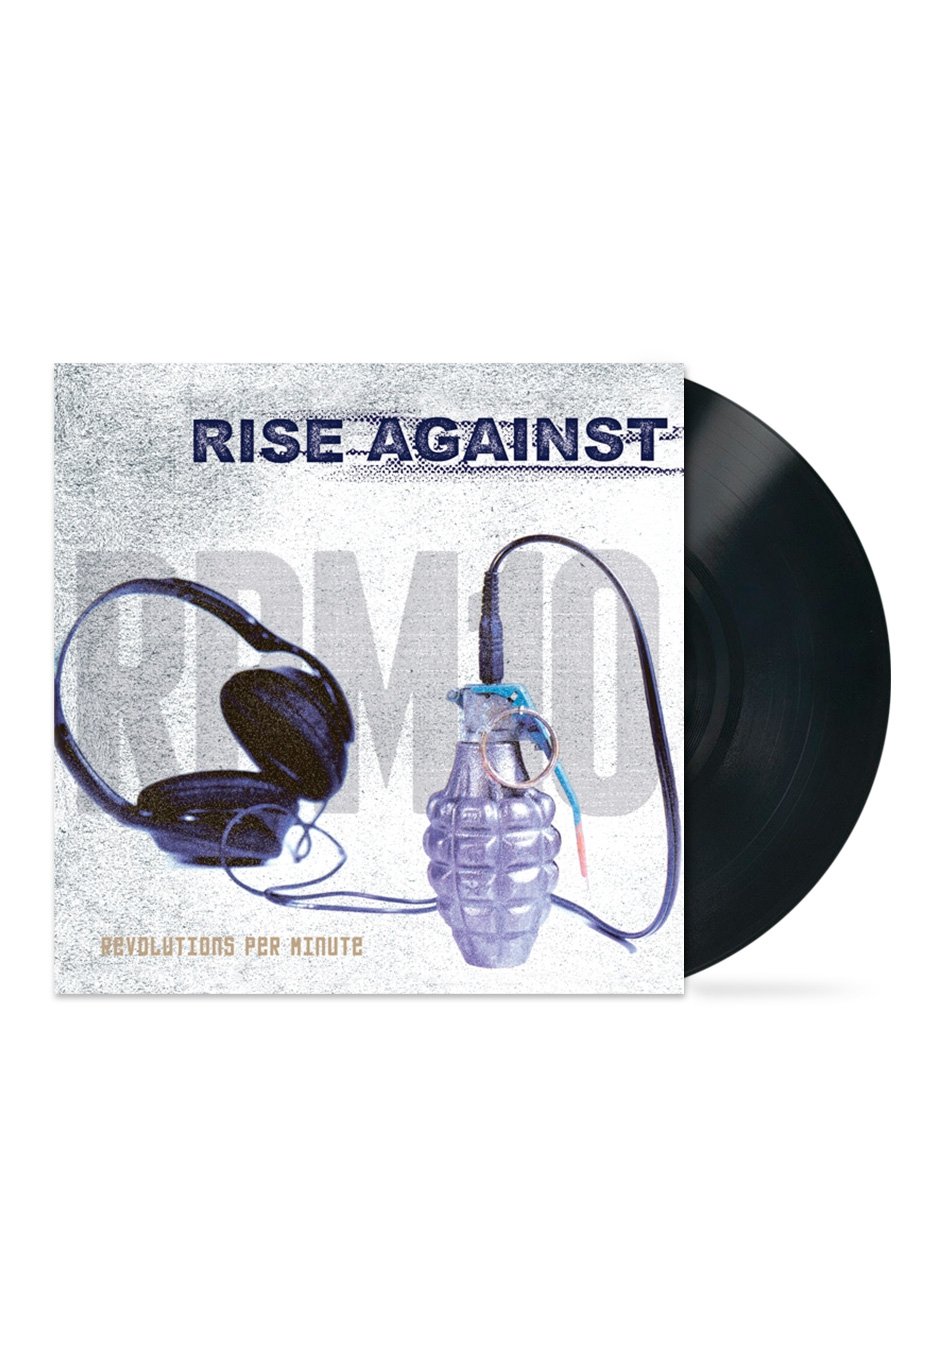 Rise Against - RPM10 - Vinyl